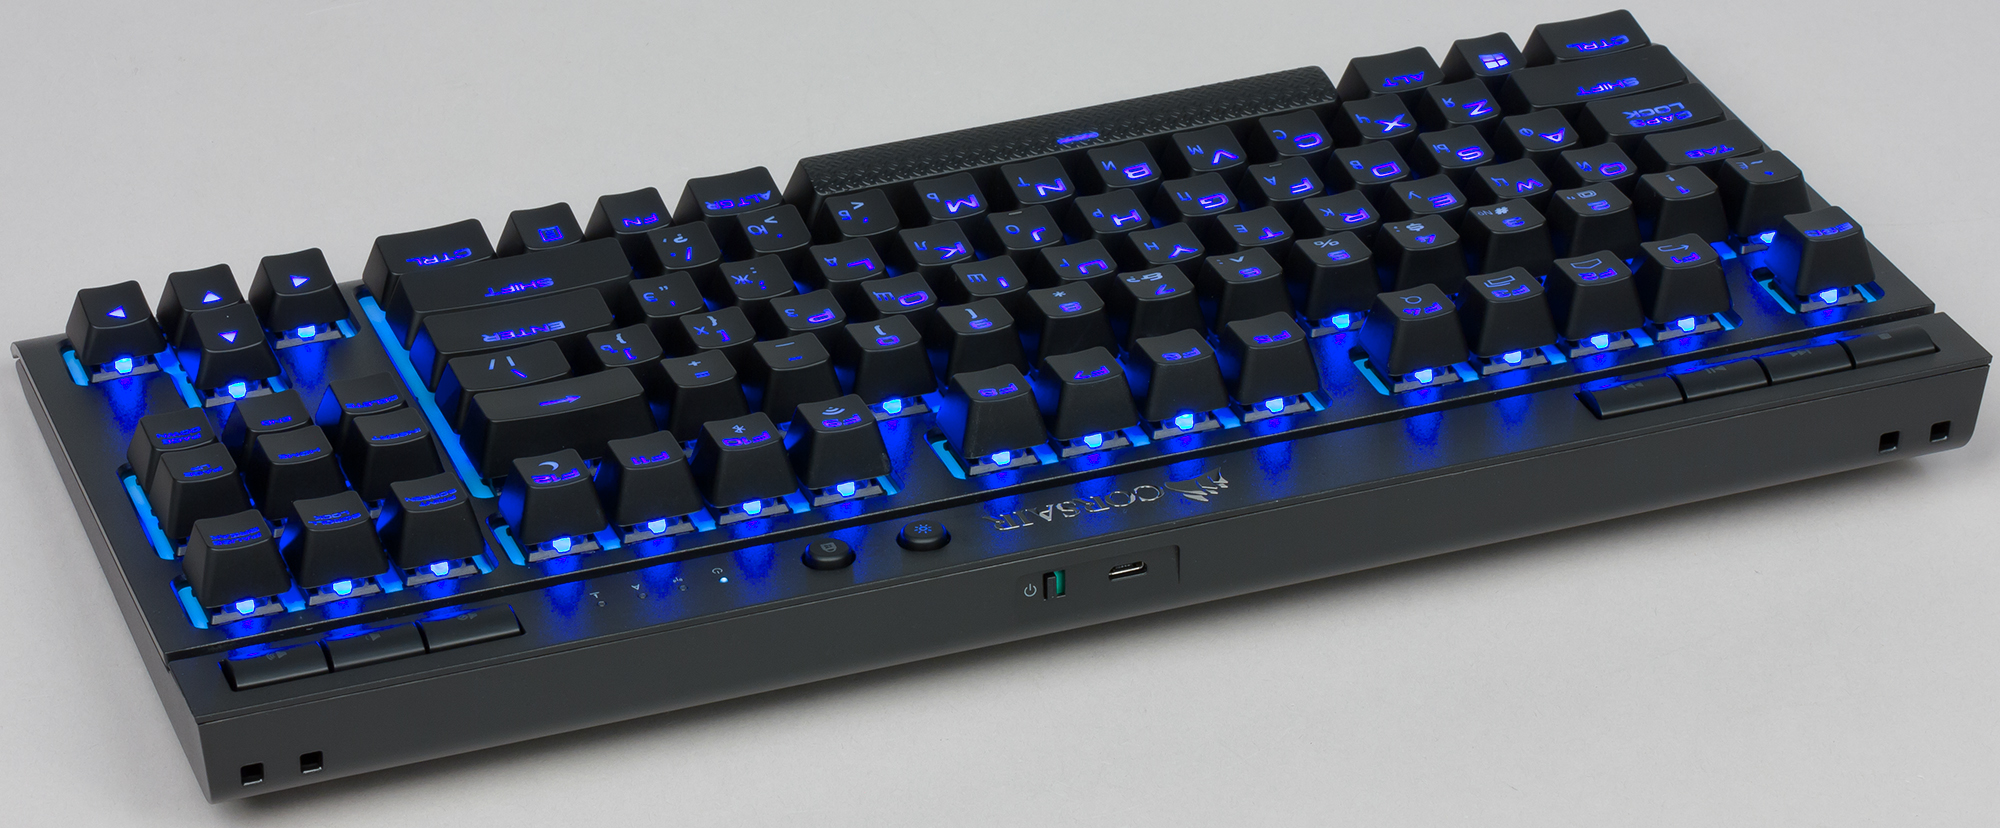 Corsair k63. Corsair k63 Wireless. Галерея на клавиатуру. Игровая механическая клавиатура на синих свечах.